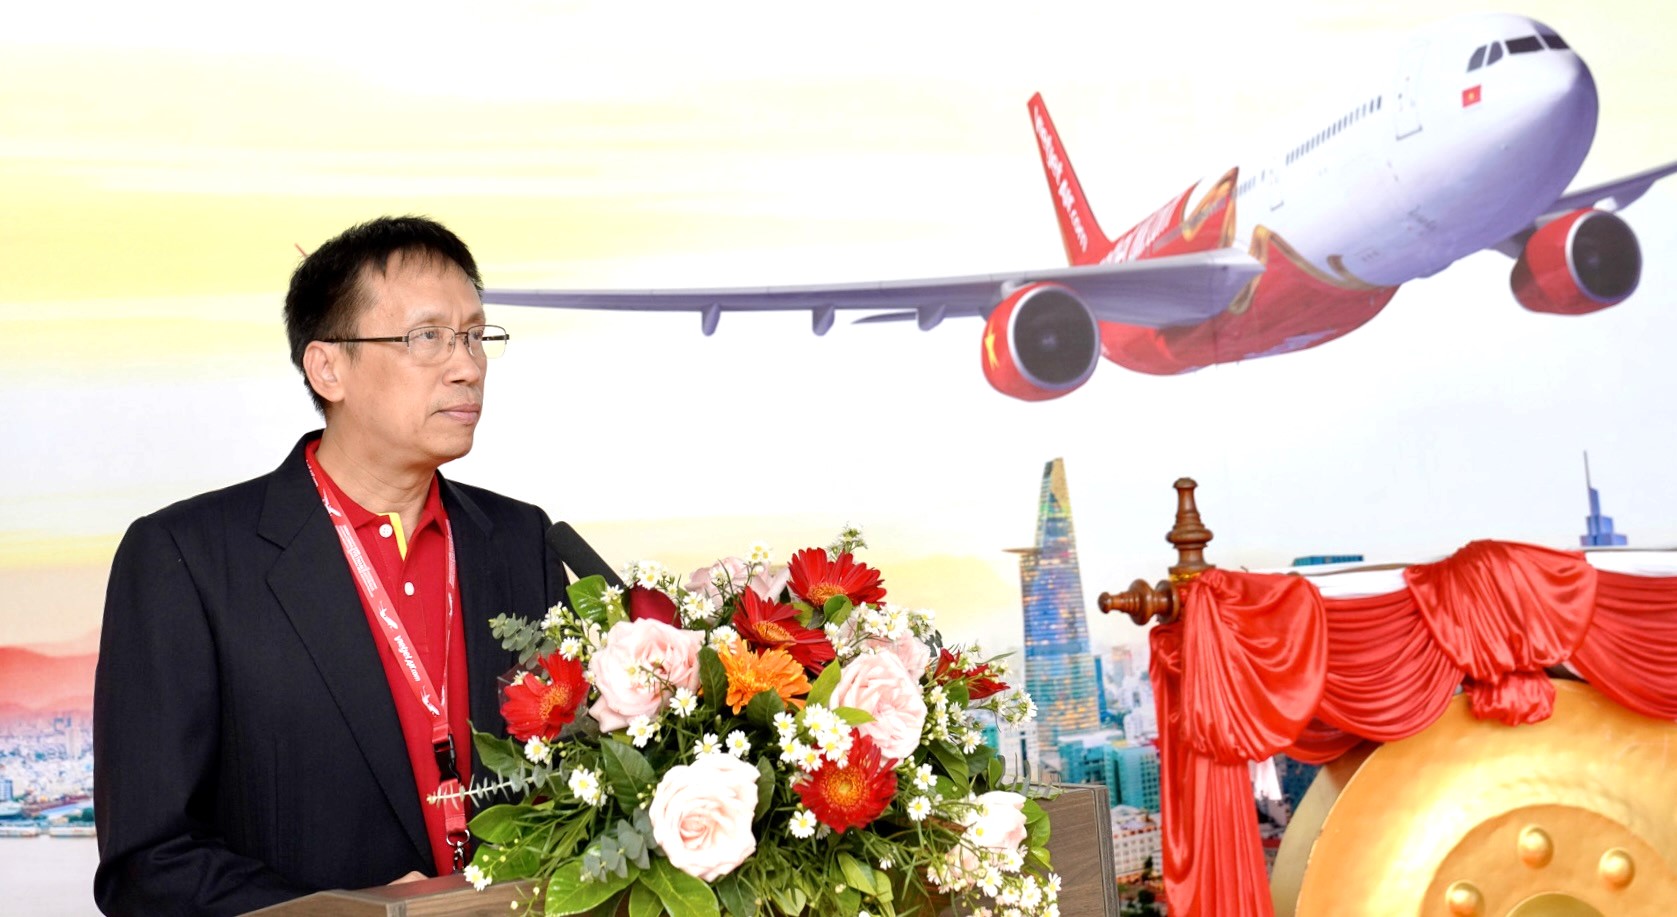 Năm mới rộn ràng, khám phá ngay Viêng Chăn, Lào với đường bay mới của Vietjet - Ảnh 7.